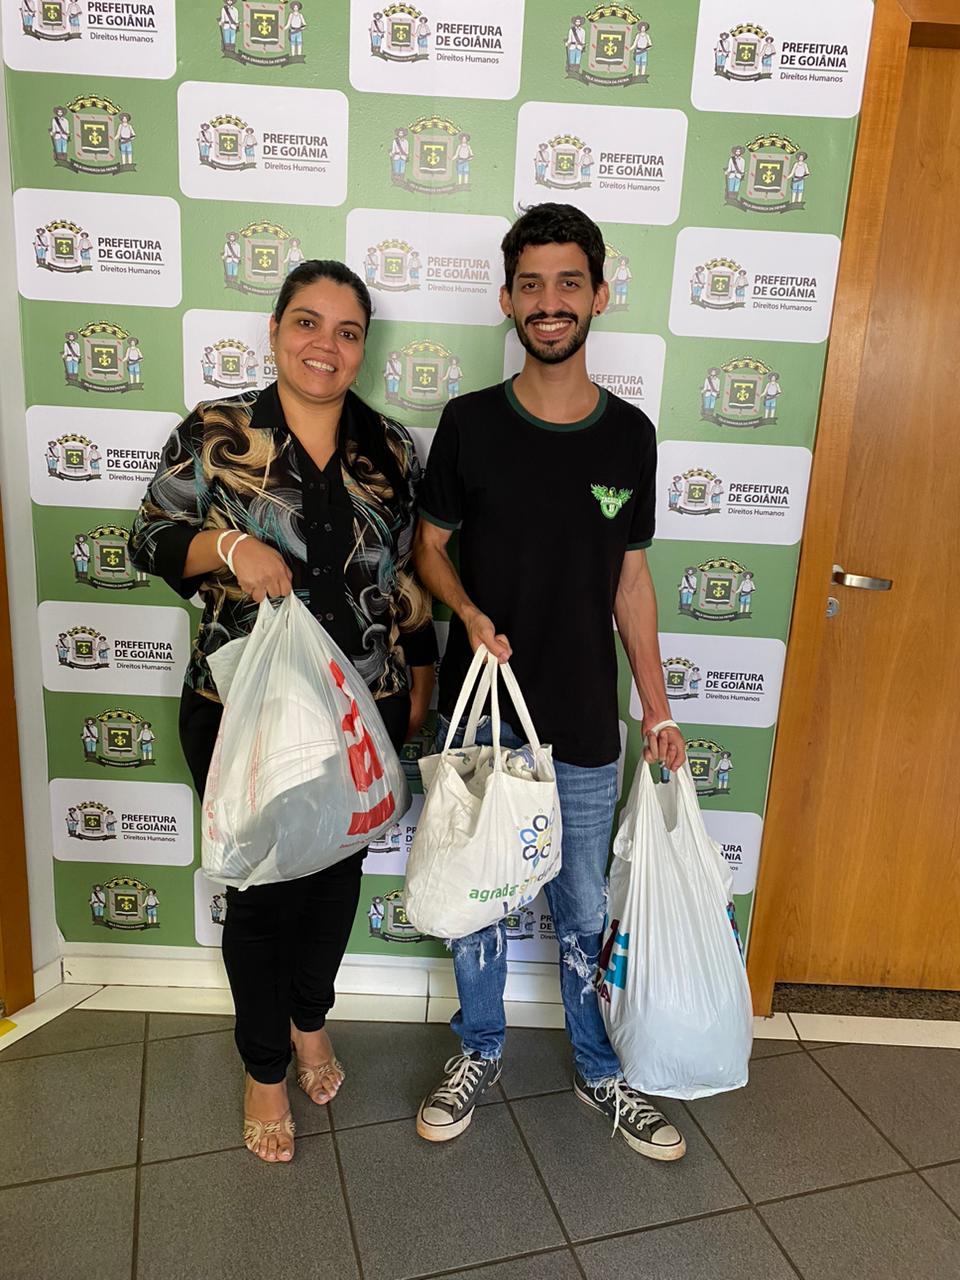 Prefeitura de Goiânia lança campanha de arrecadação de agasalhos e cobertores para população em situação de rua